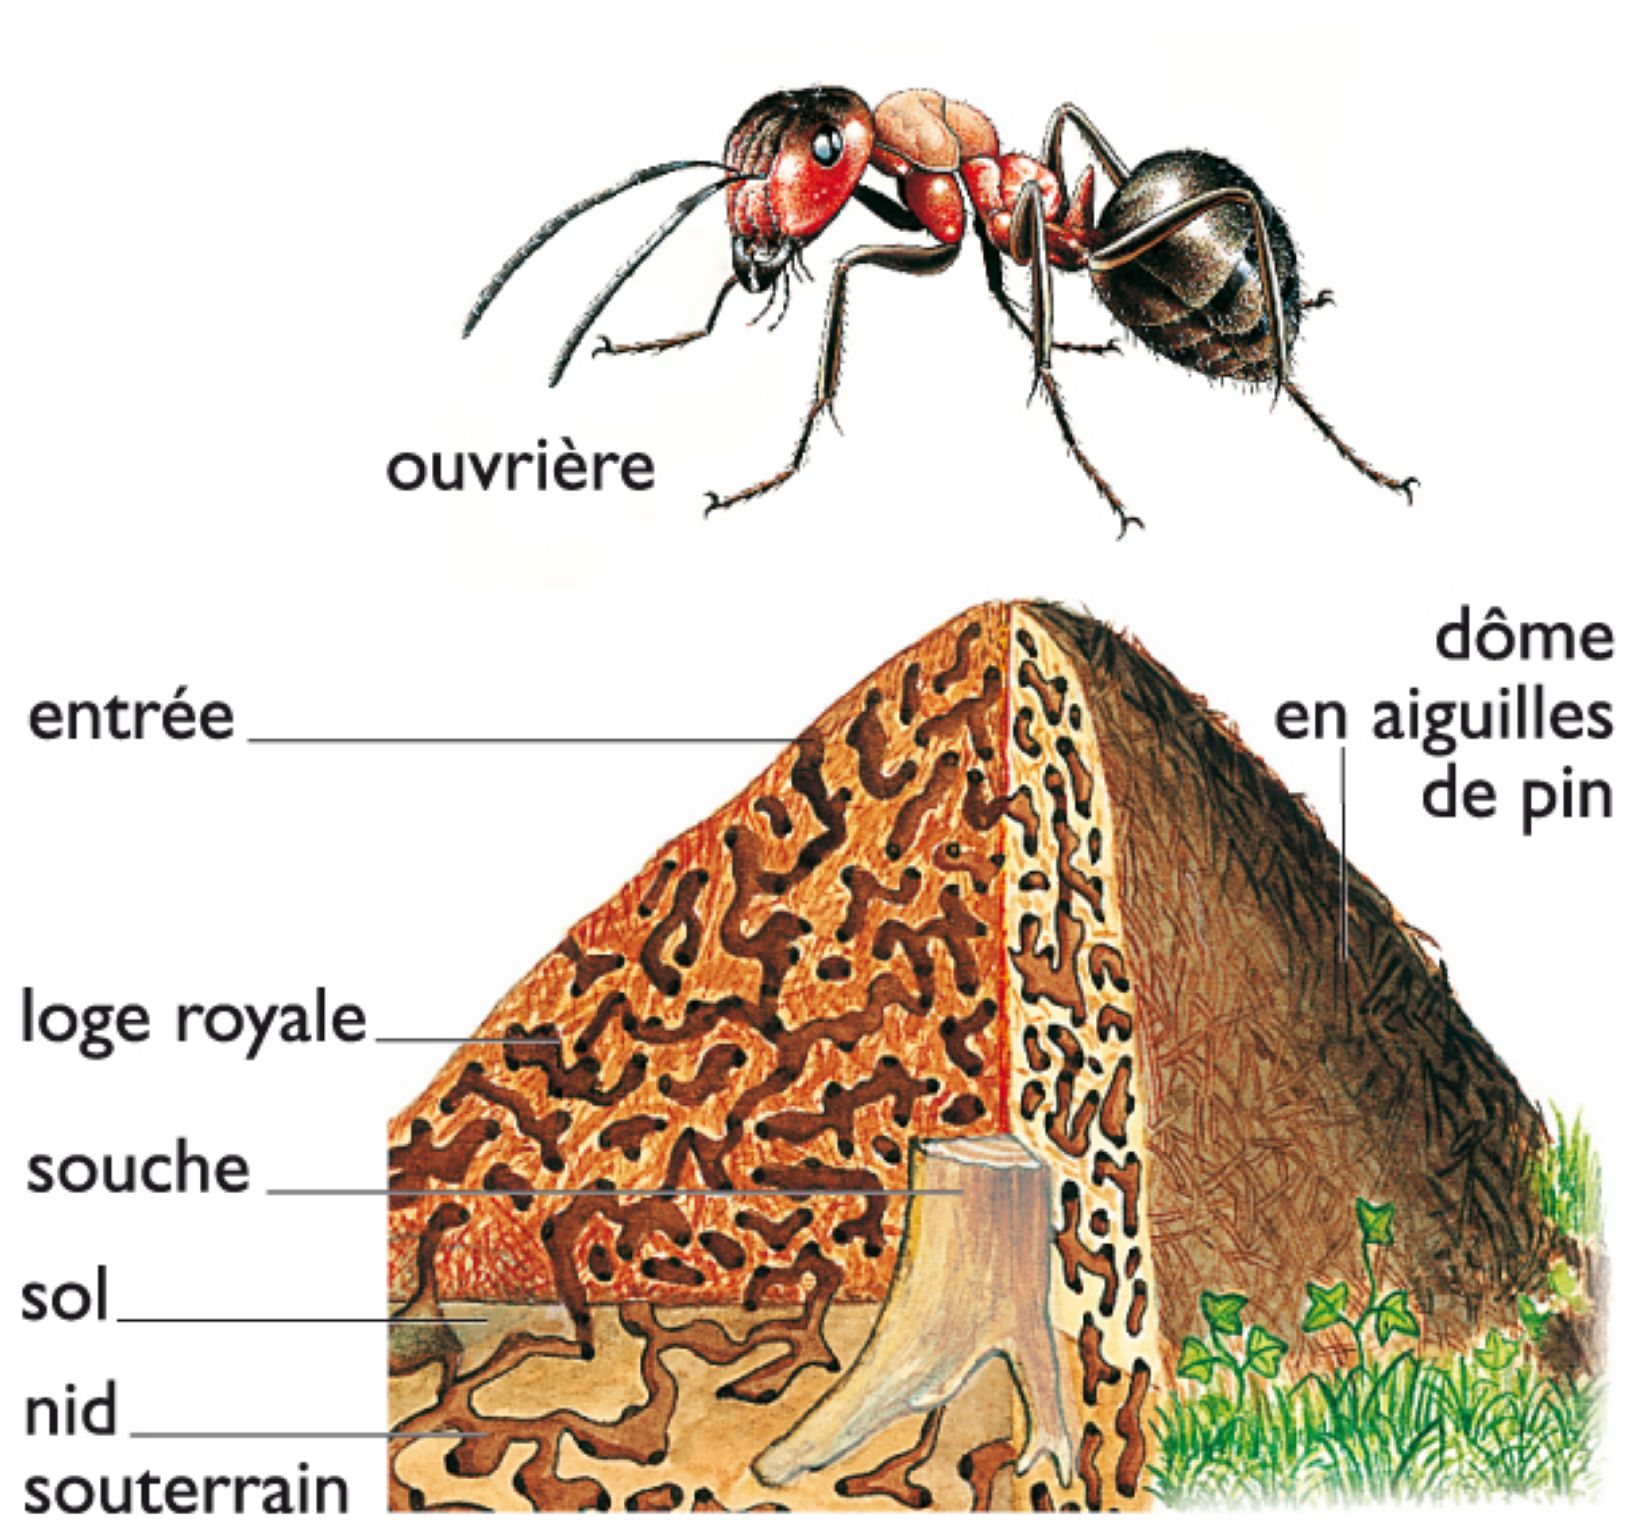 fourmi rousse et foumillière